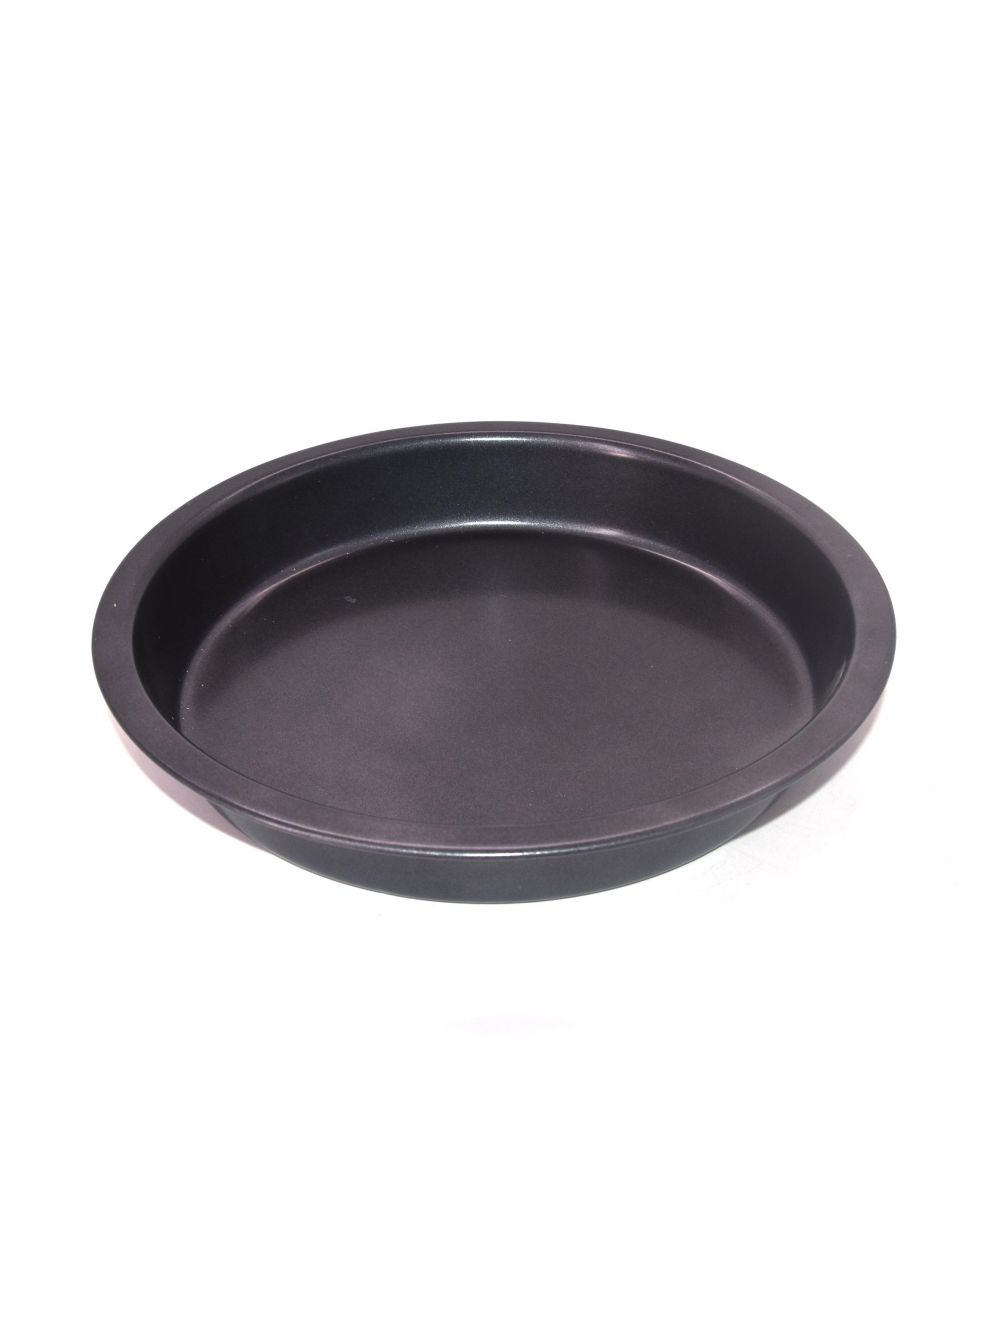 Round Non-Stick Baking Pan